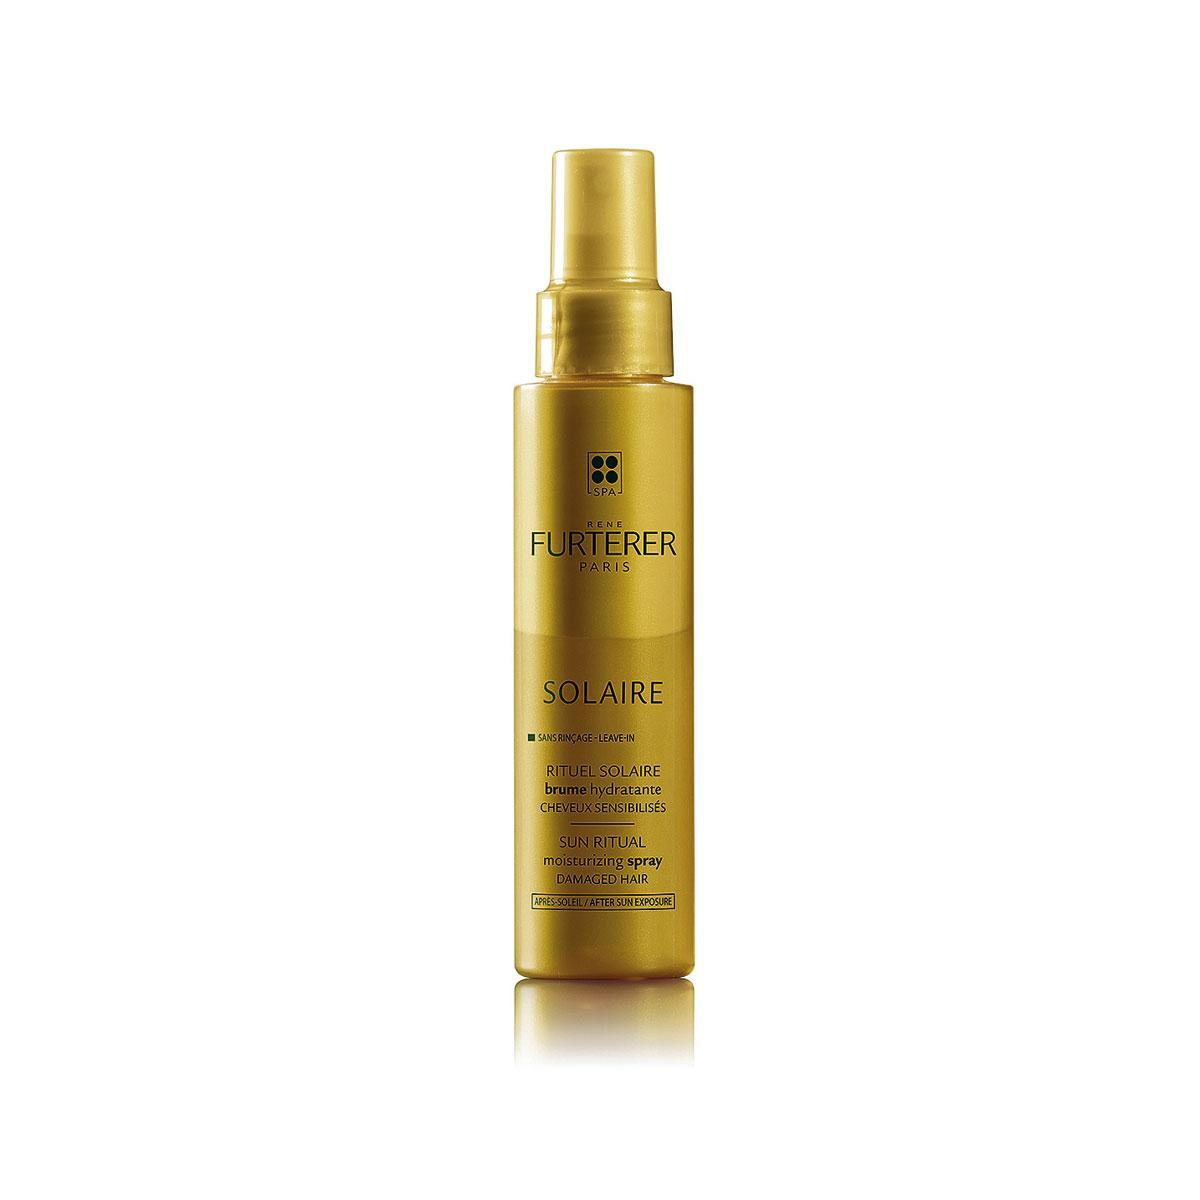 Parce qu'il ne faut pas oublier les cheveux : Brume hydratante cheveux sensibilisés, Rituel Solaire René Furterer (18,90 ? 100 ml), chez Planet Parfum.